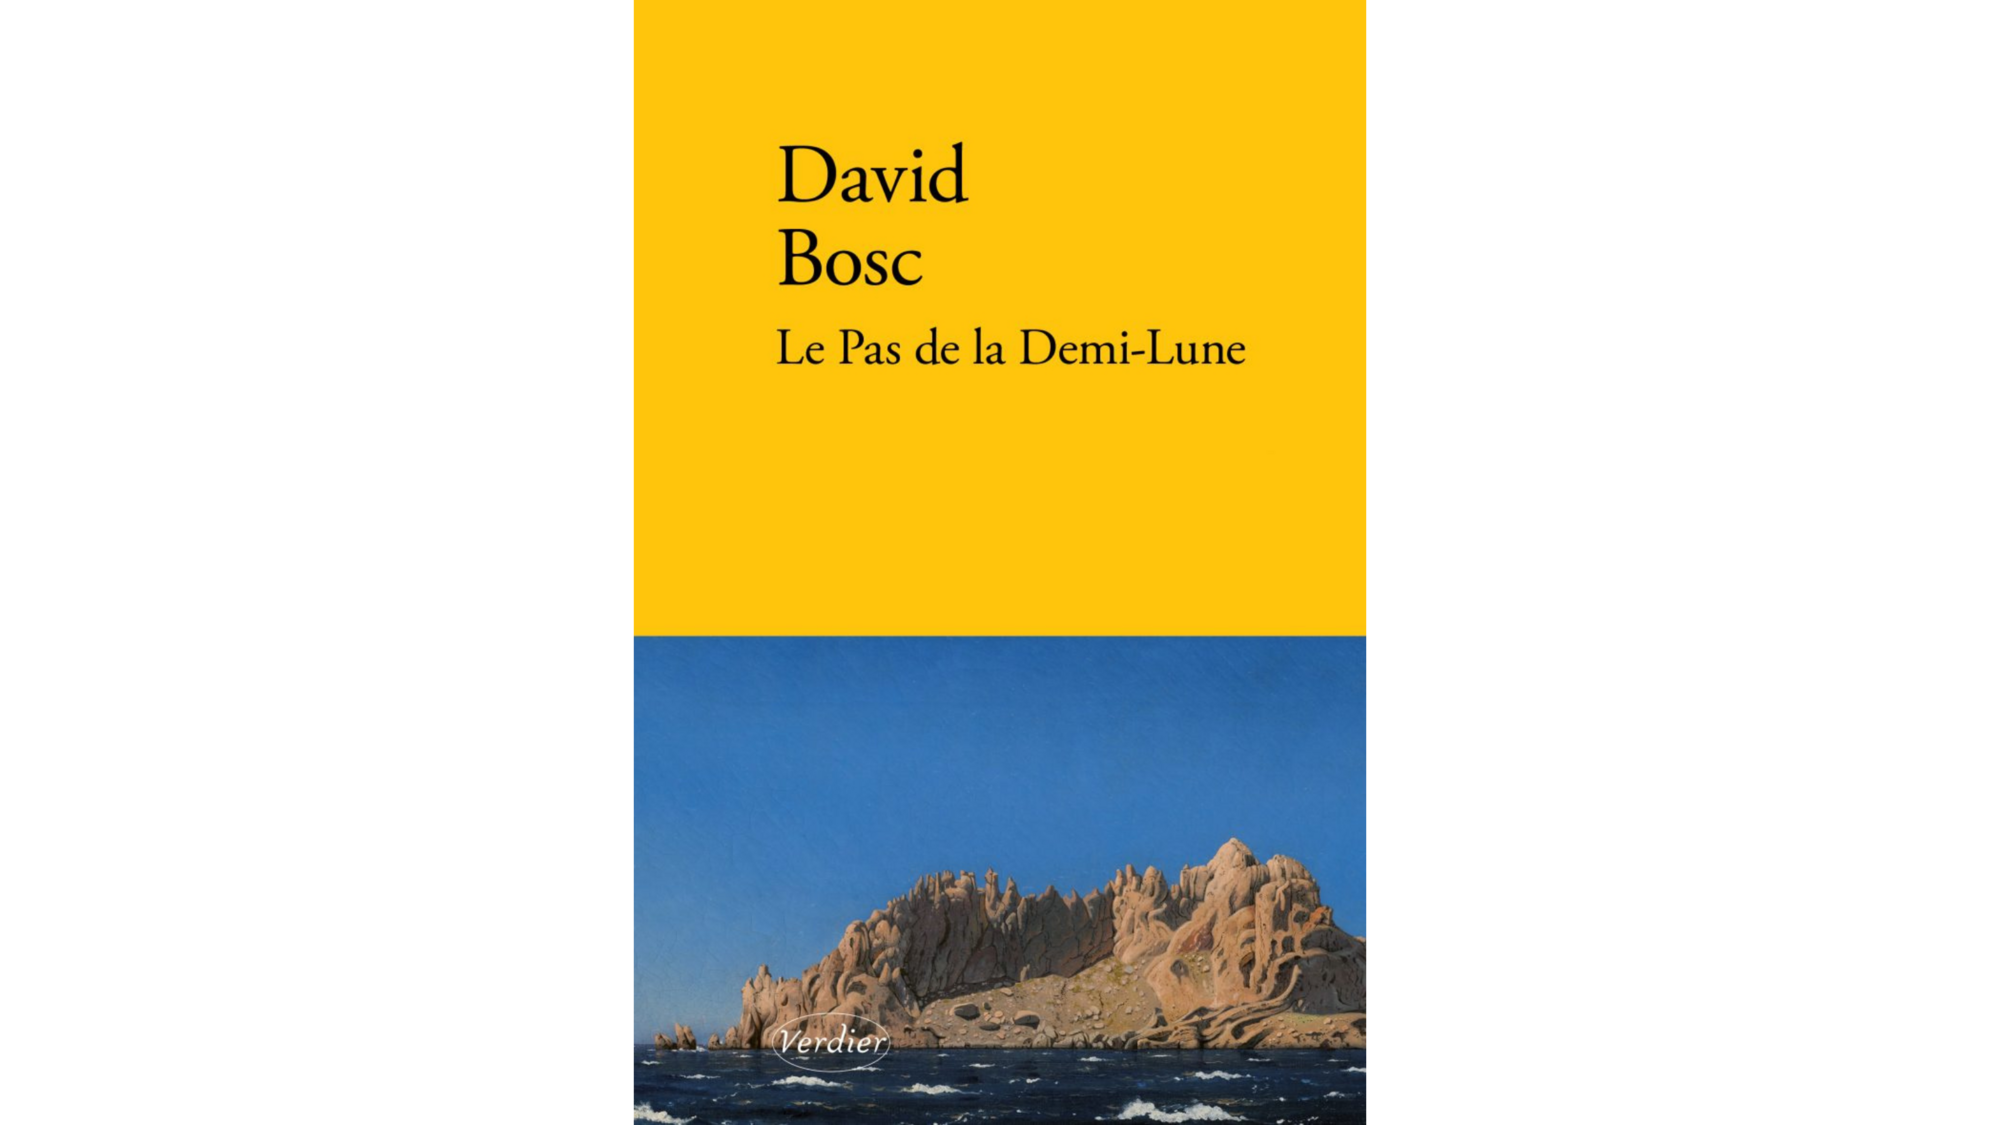 Couverture de l'ouvrage Le Pas de la Demi-Lune de David Bosc